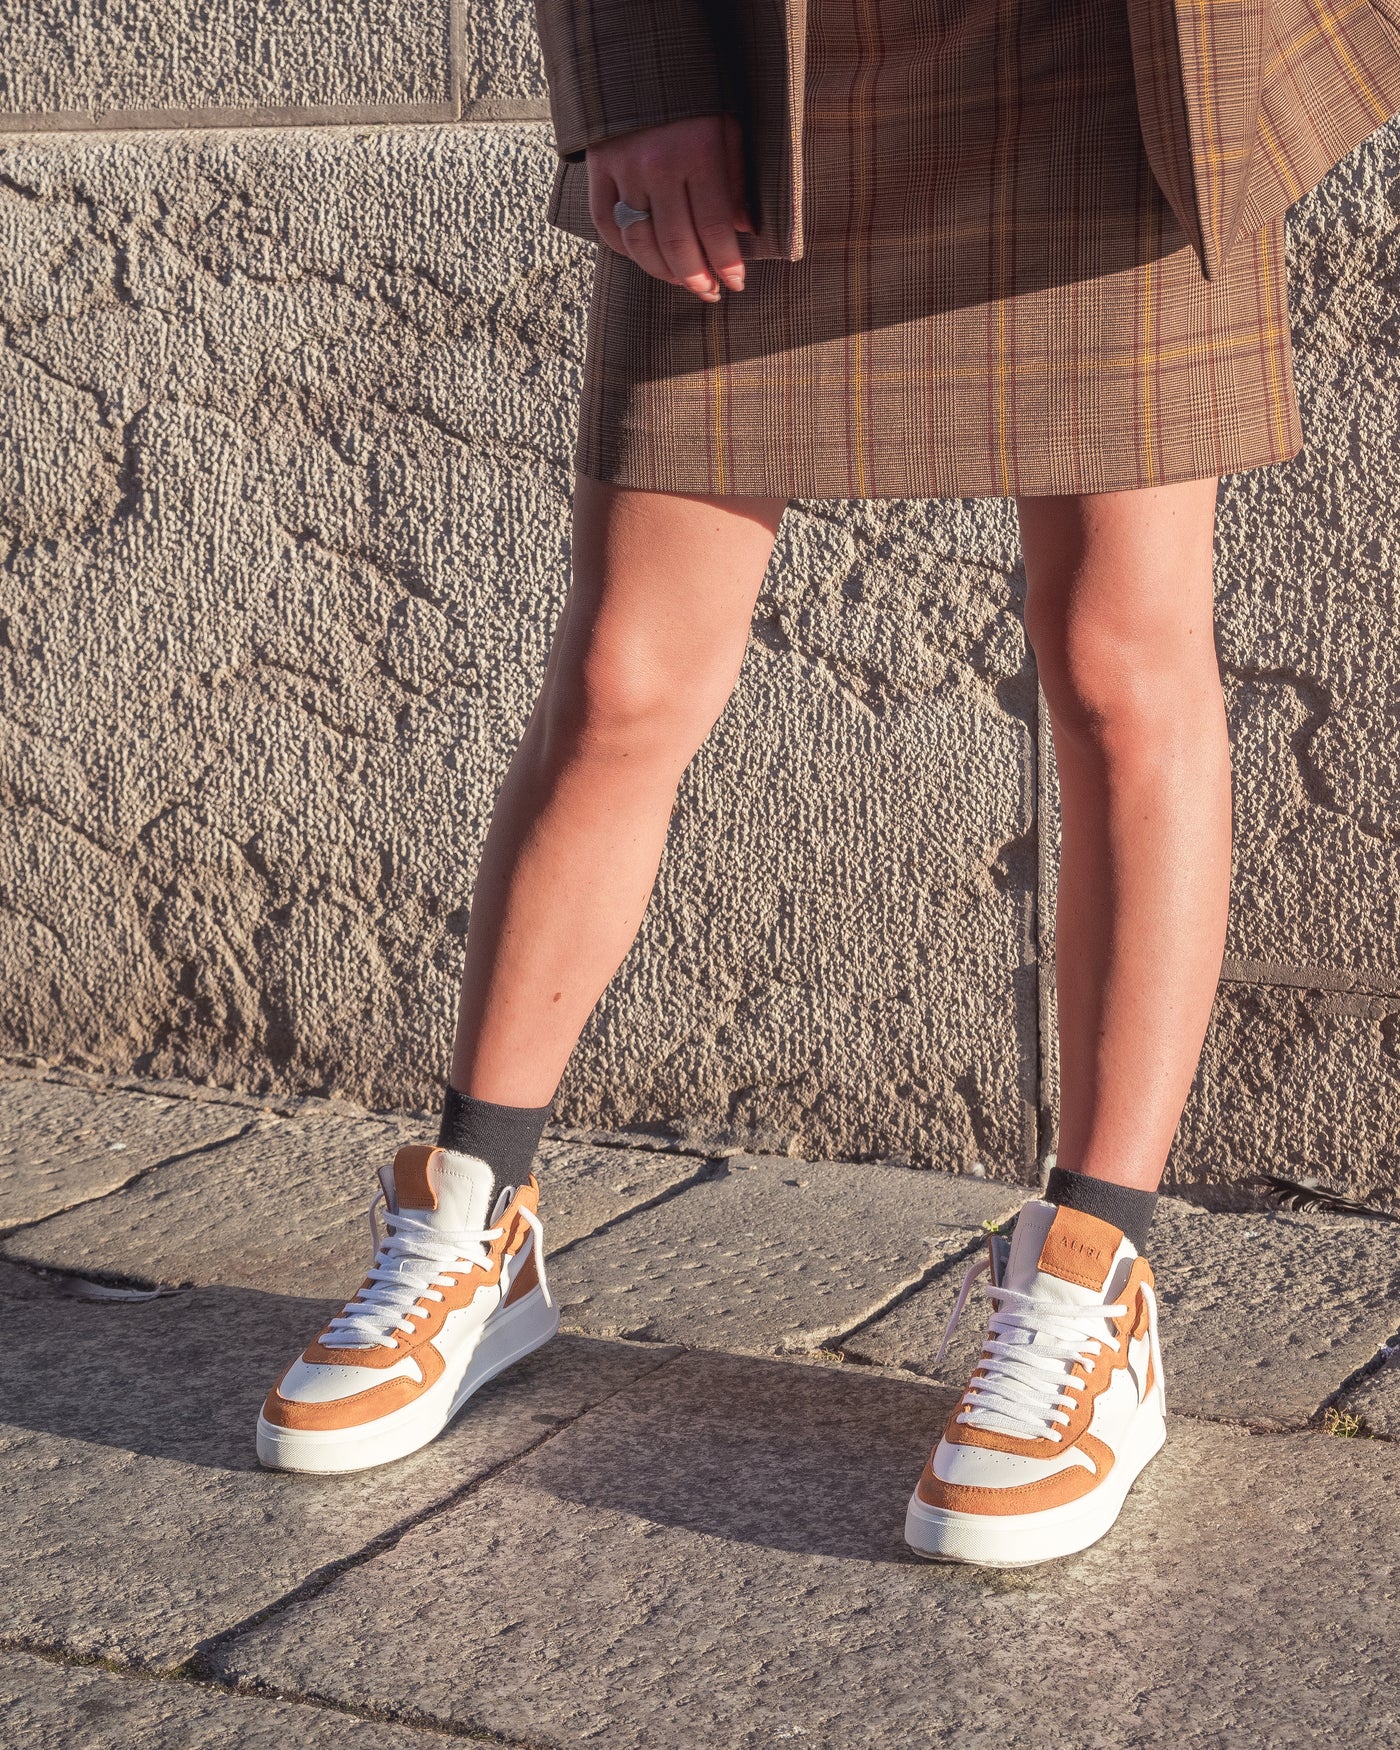 Megan | Sneakers in Pelle White/Orange